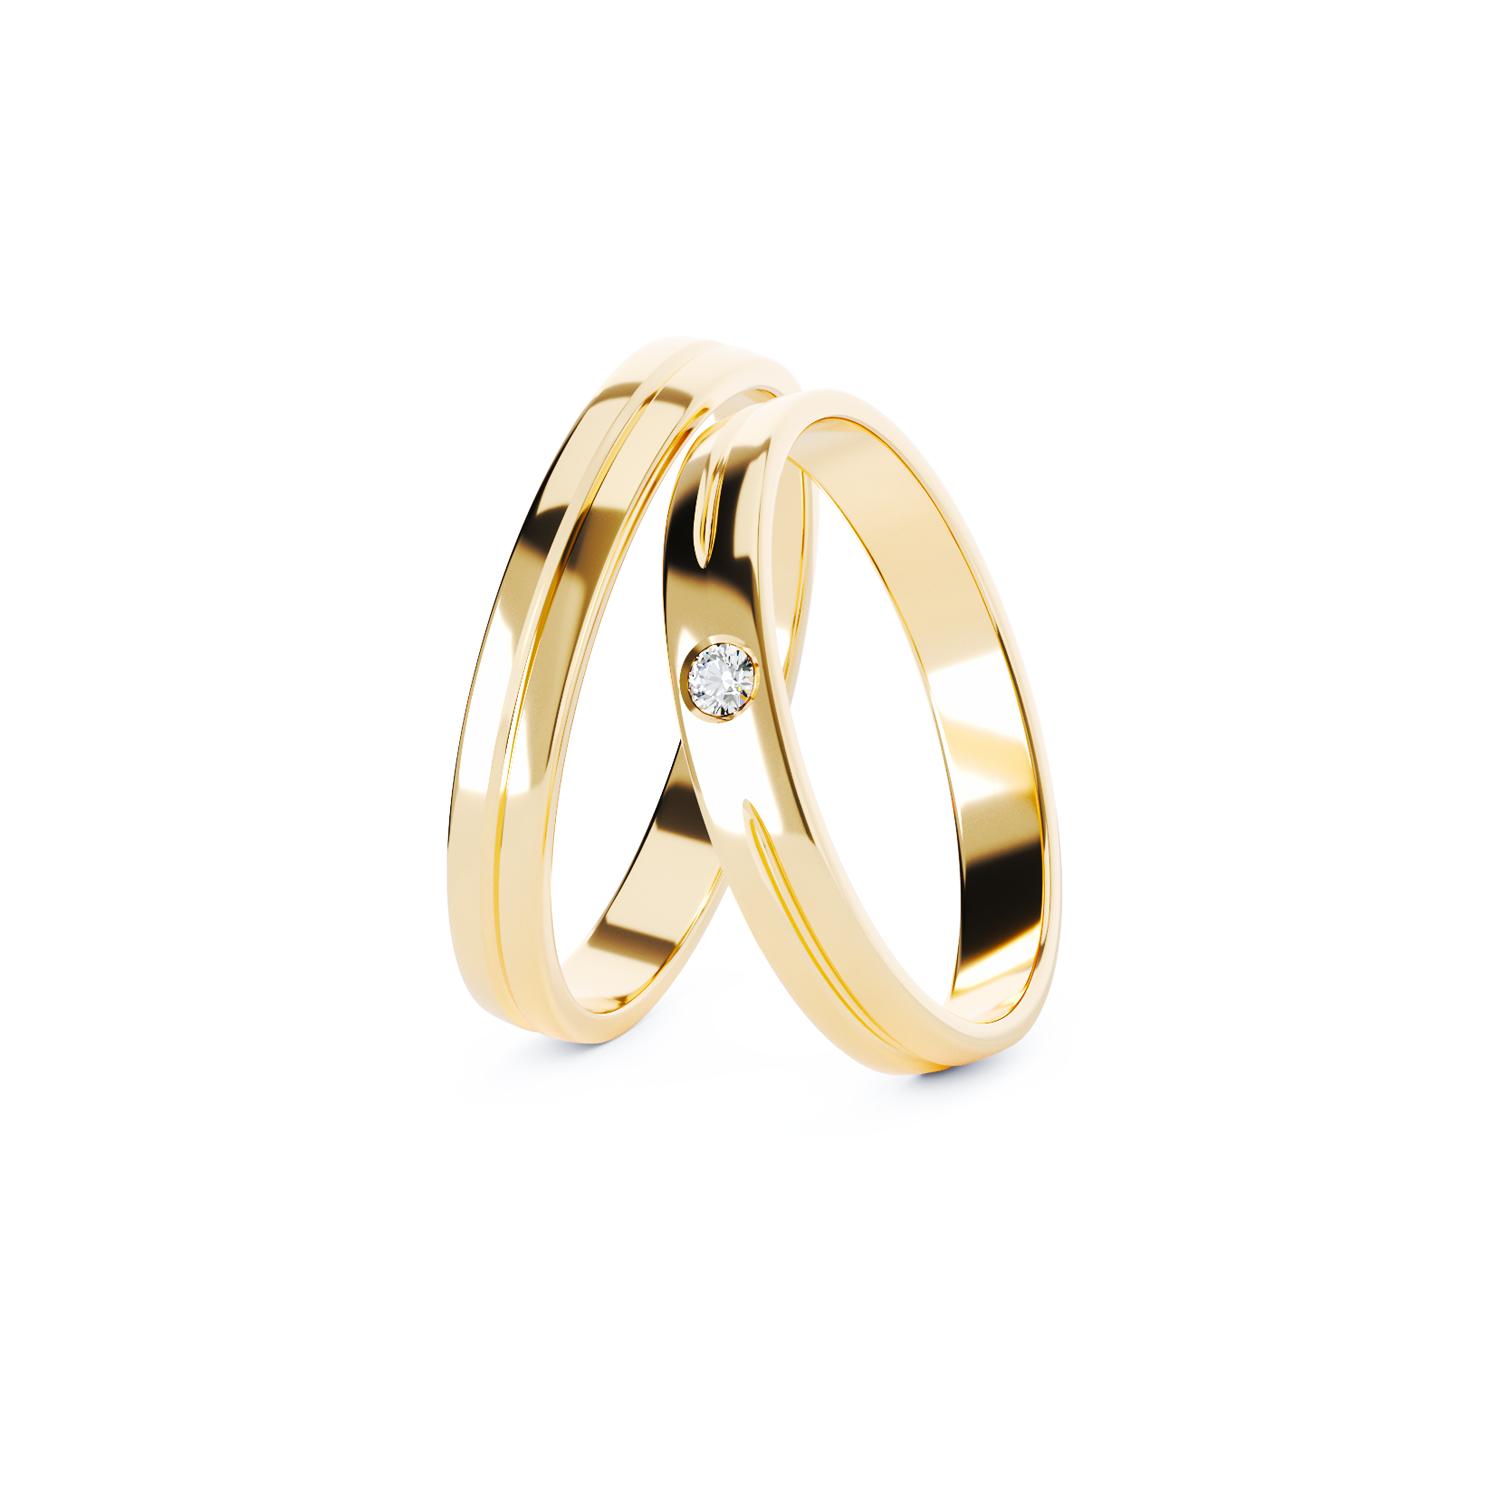 C637 gold wedding rings